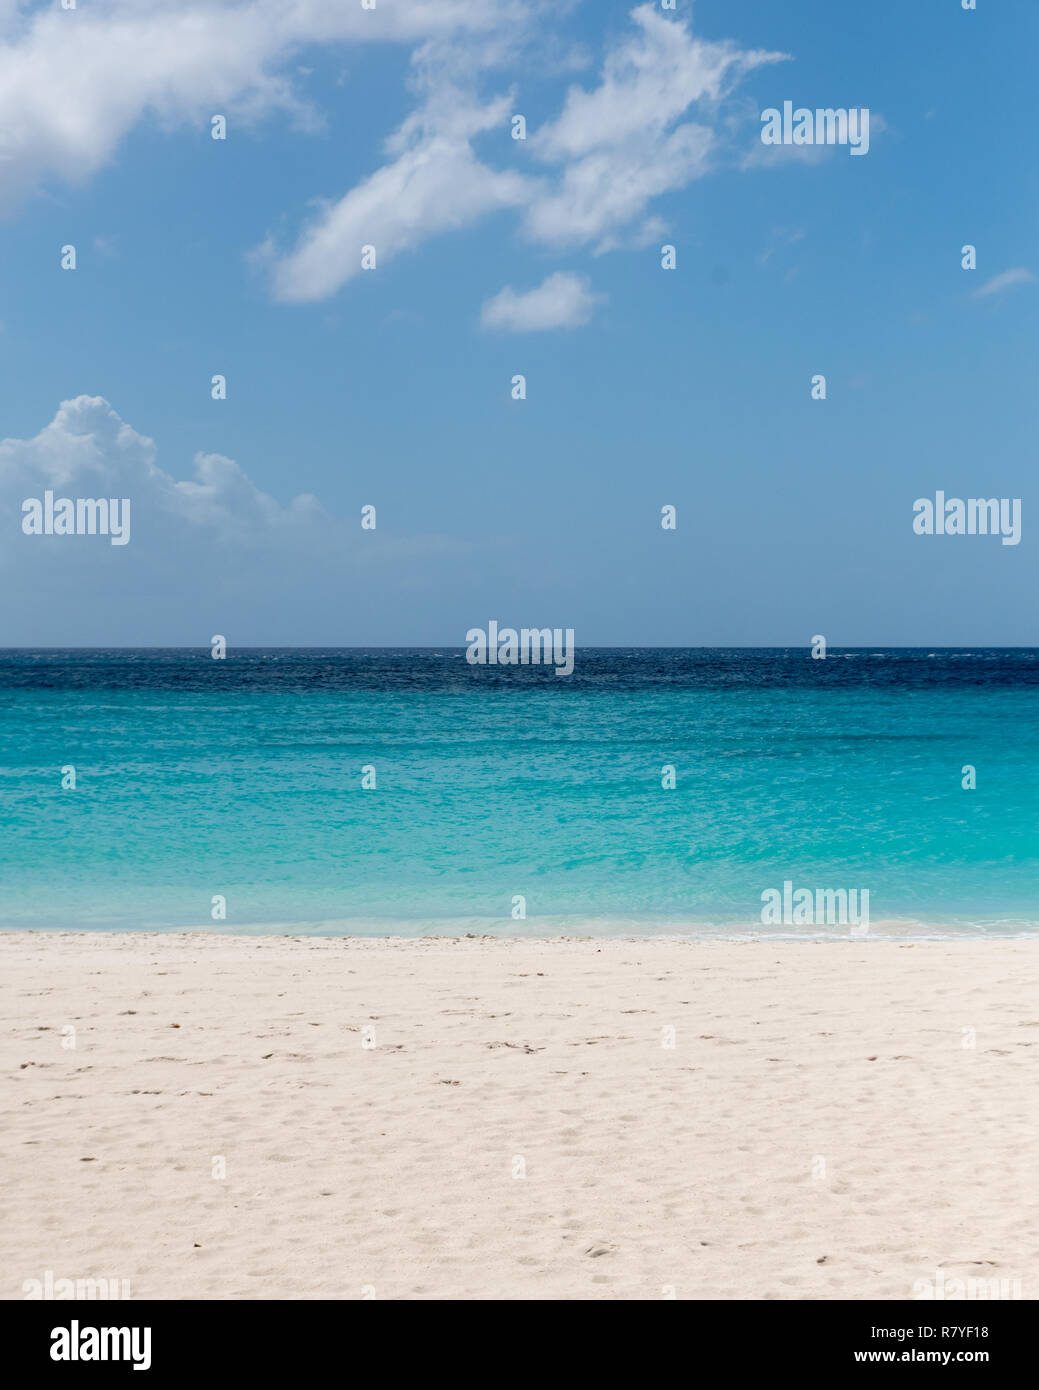 Aruba Beach - tropical spiaggia di sabbia bianca con acqua acquamarina - Divi beach è un top Aruba vacanza nei Caraibi - Isola Olandese / Isole Sottovento Foto Stock